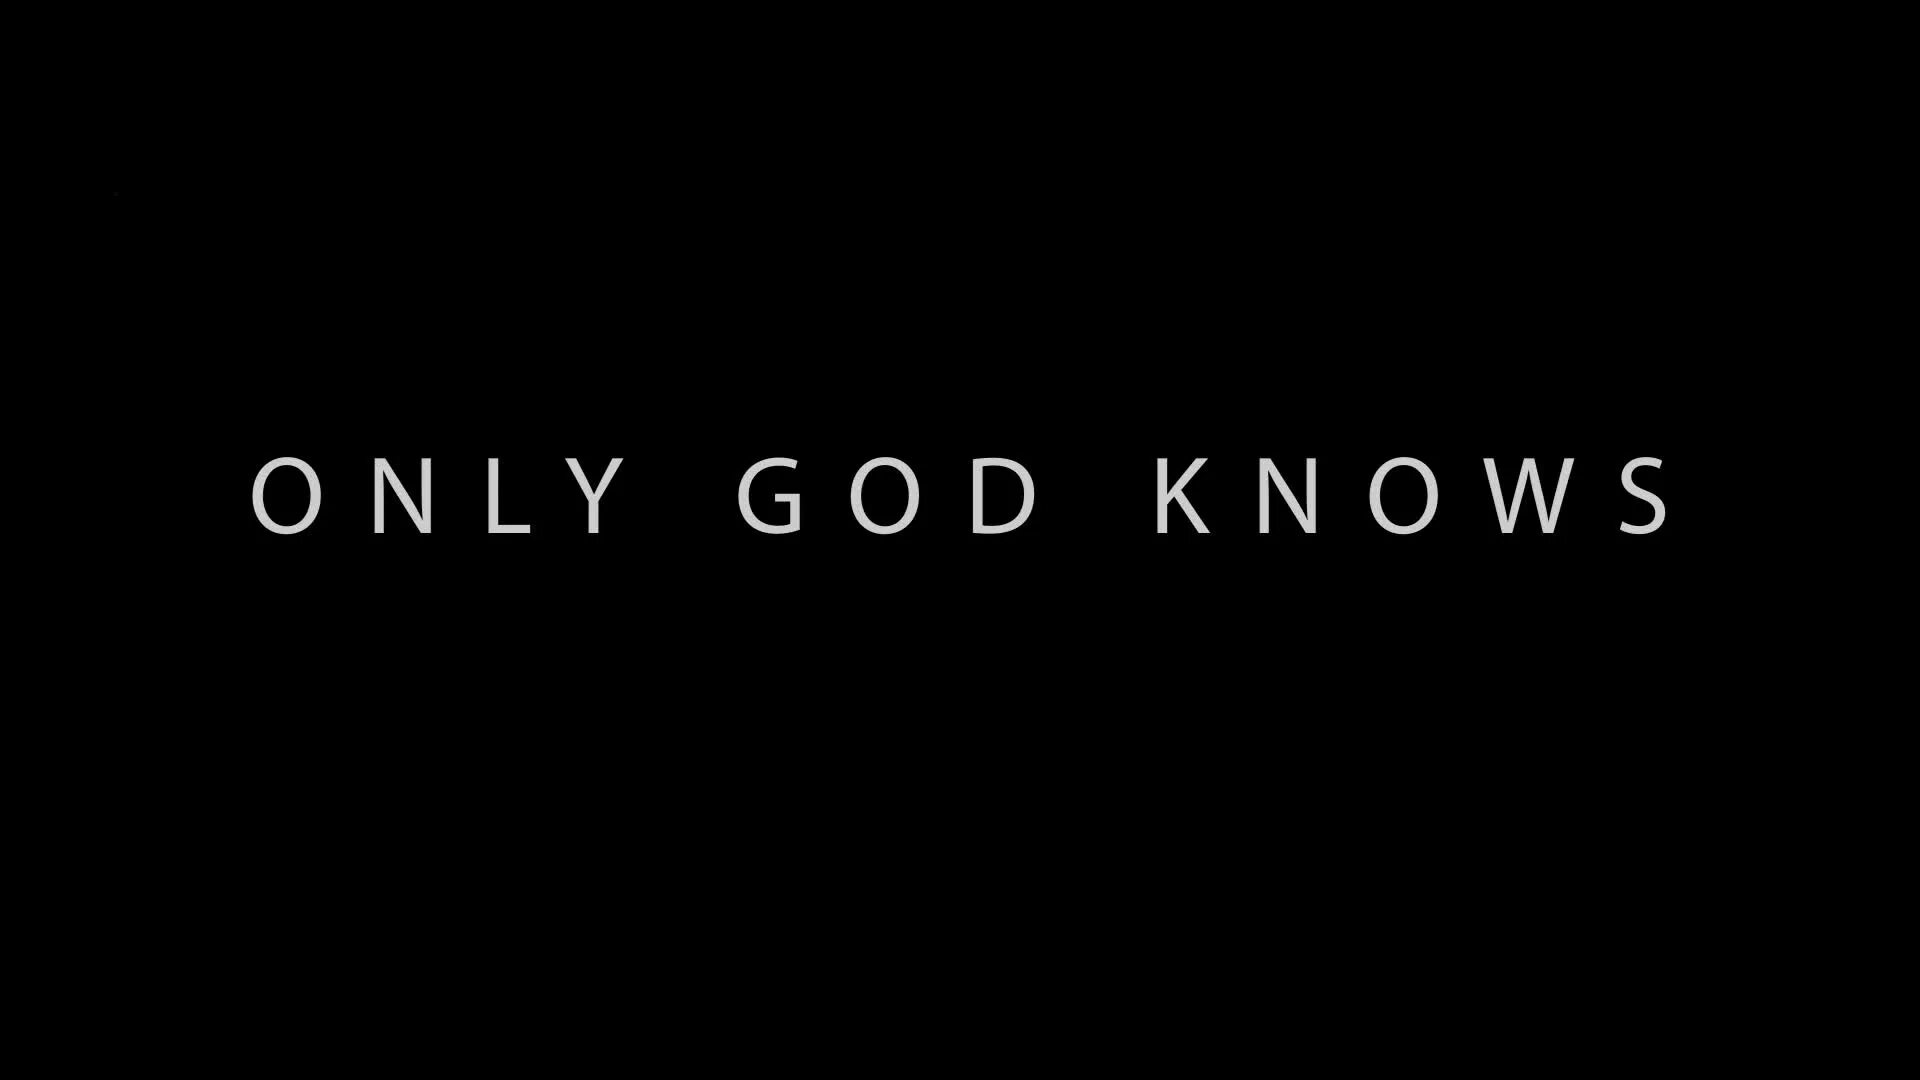 Good only know. God only knows. God knows. God knows better us.